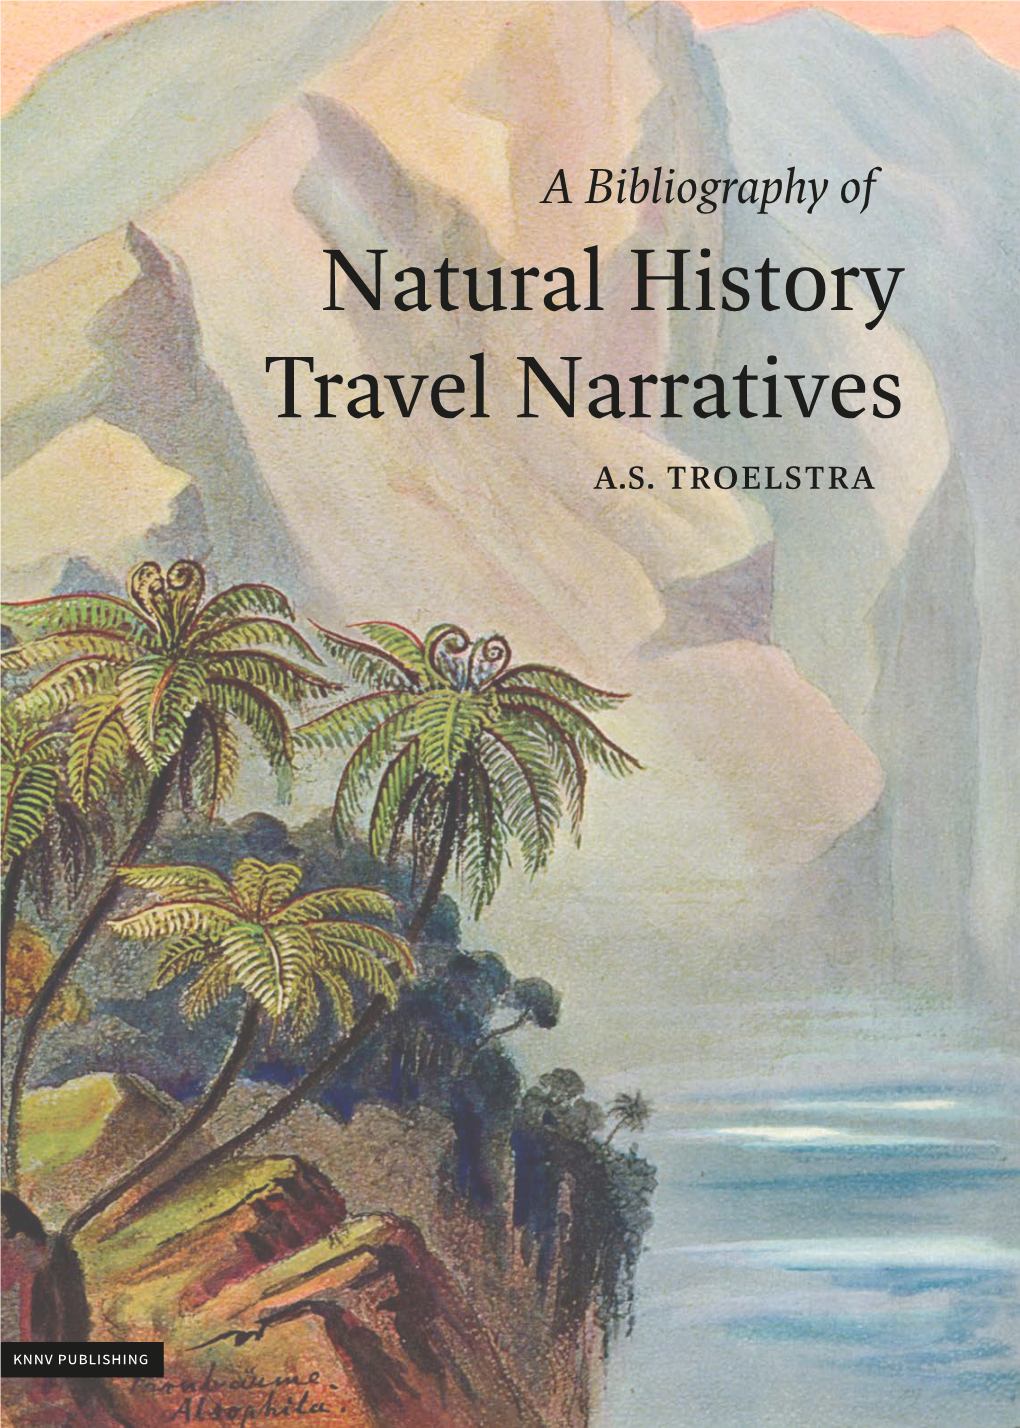 Natural History Travel Narratives A.S